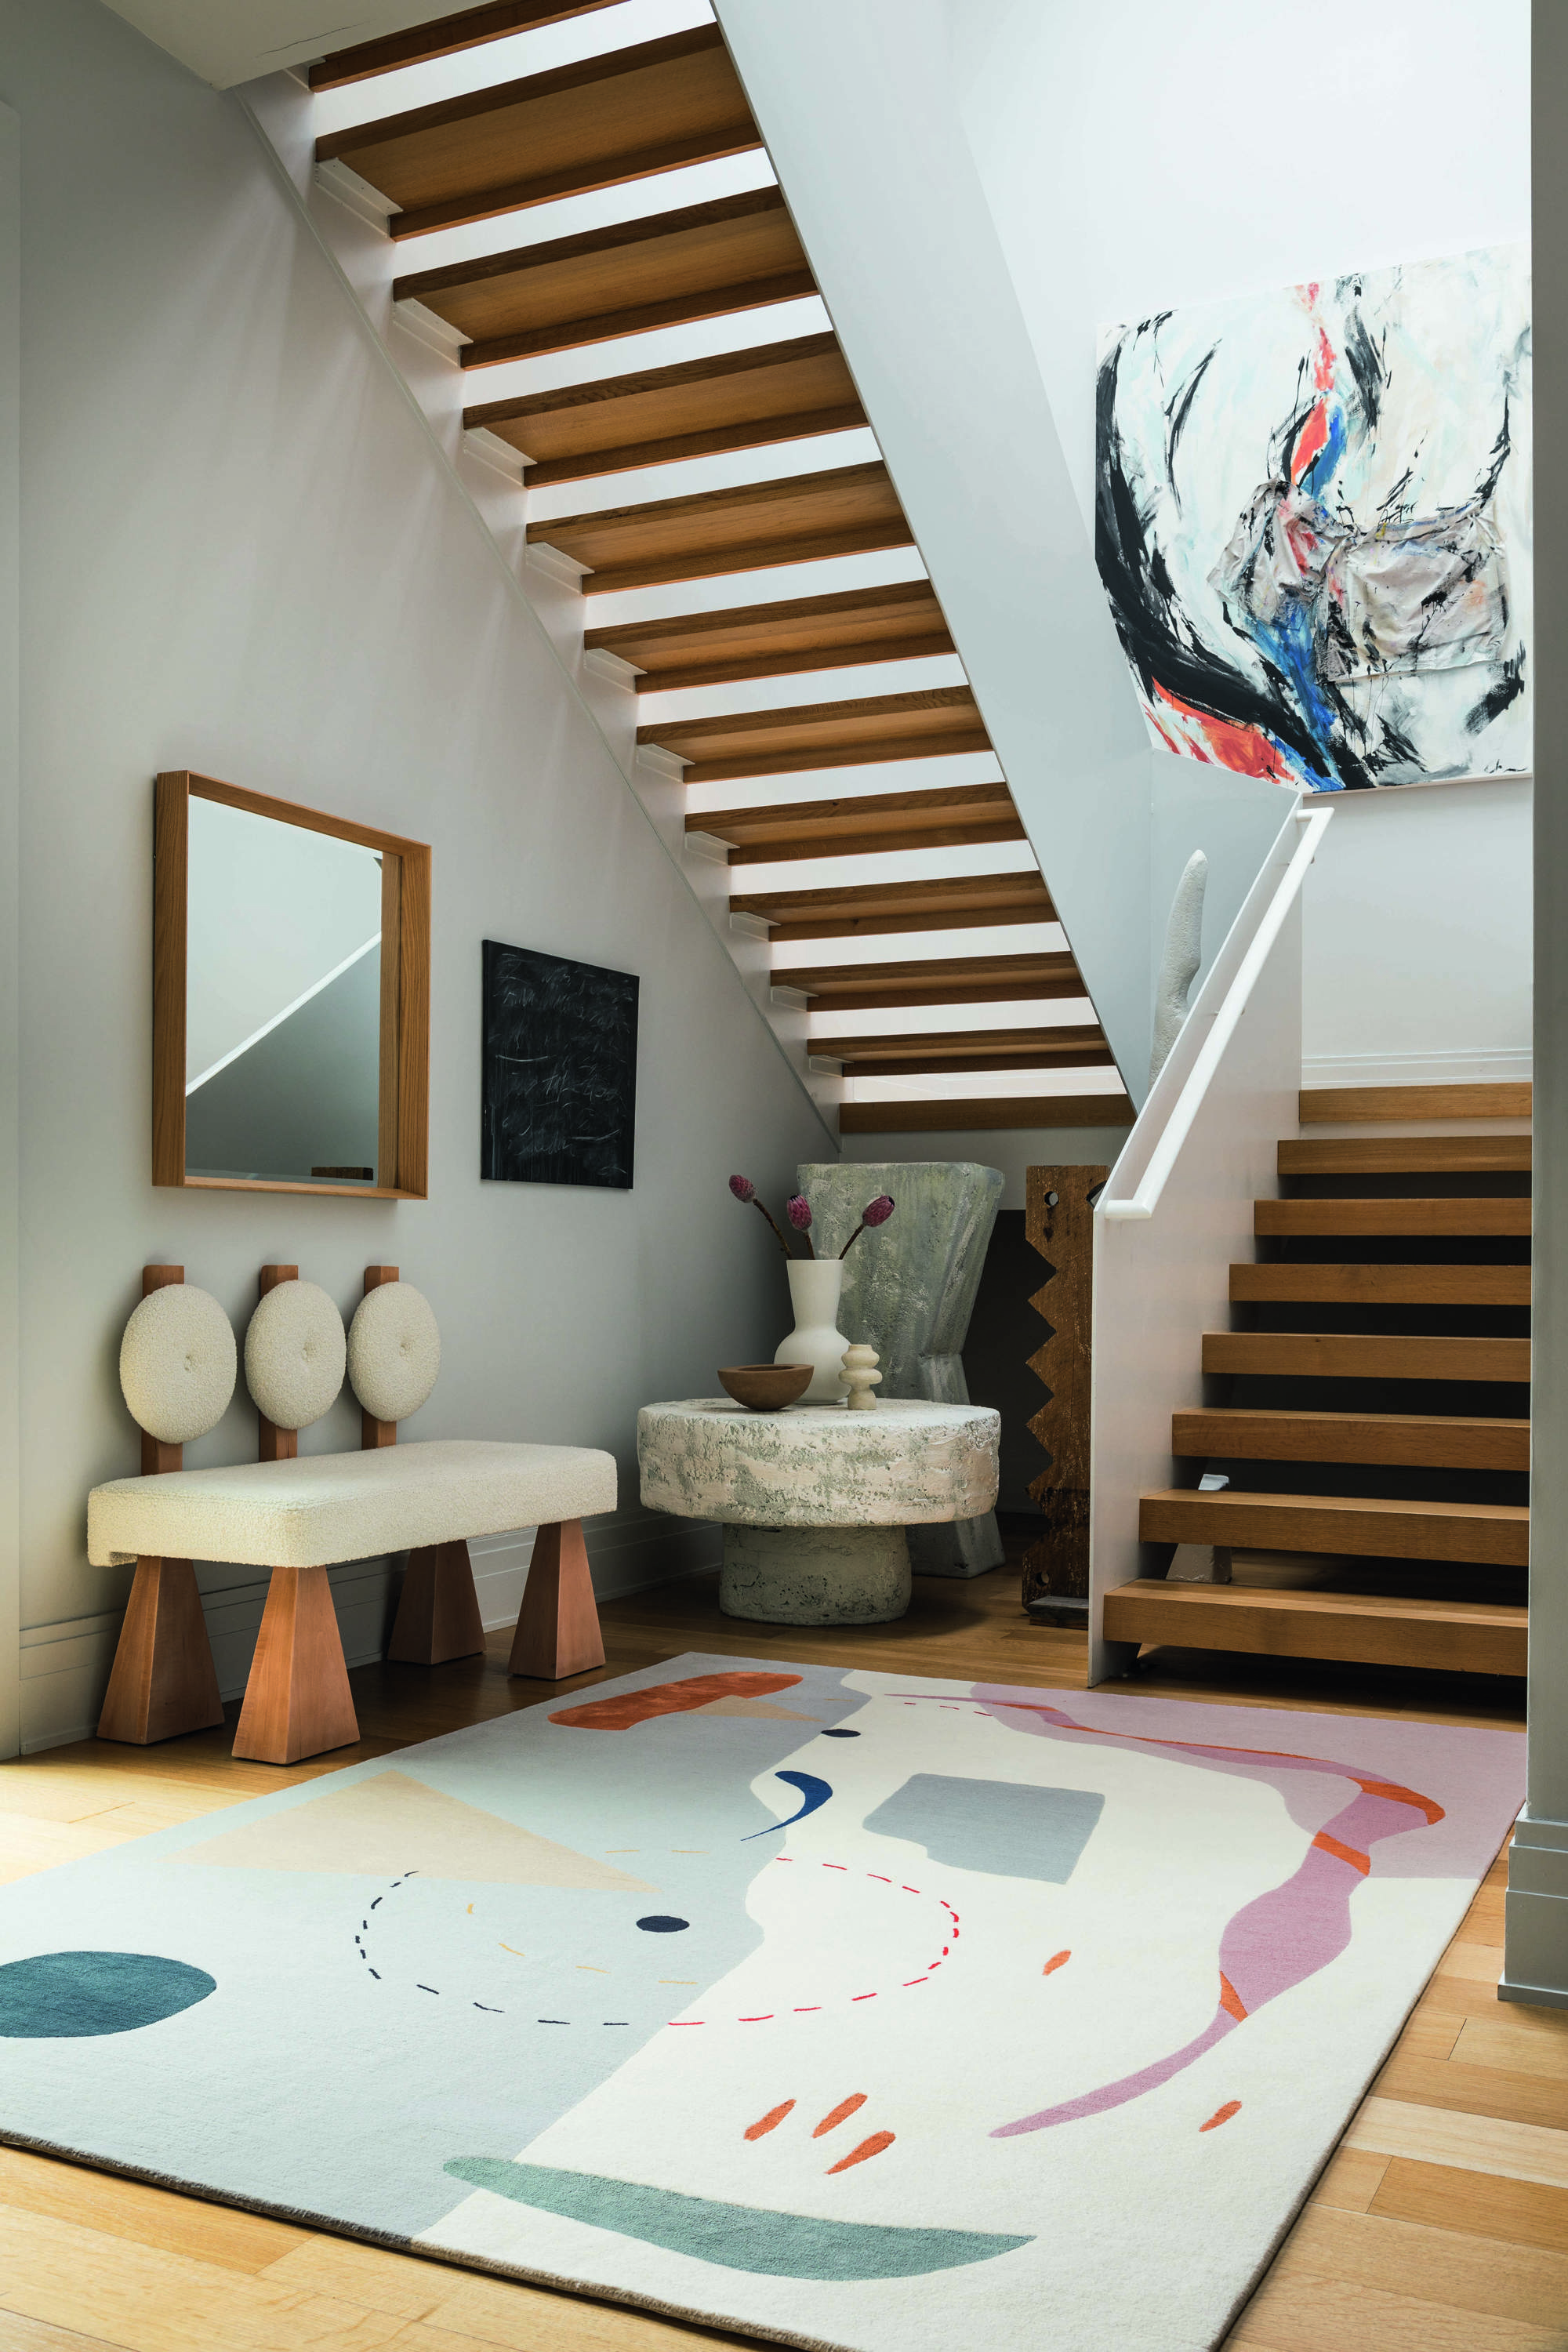 Recibidor con escalera de madera, banco, espejo y alfombra